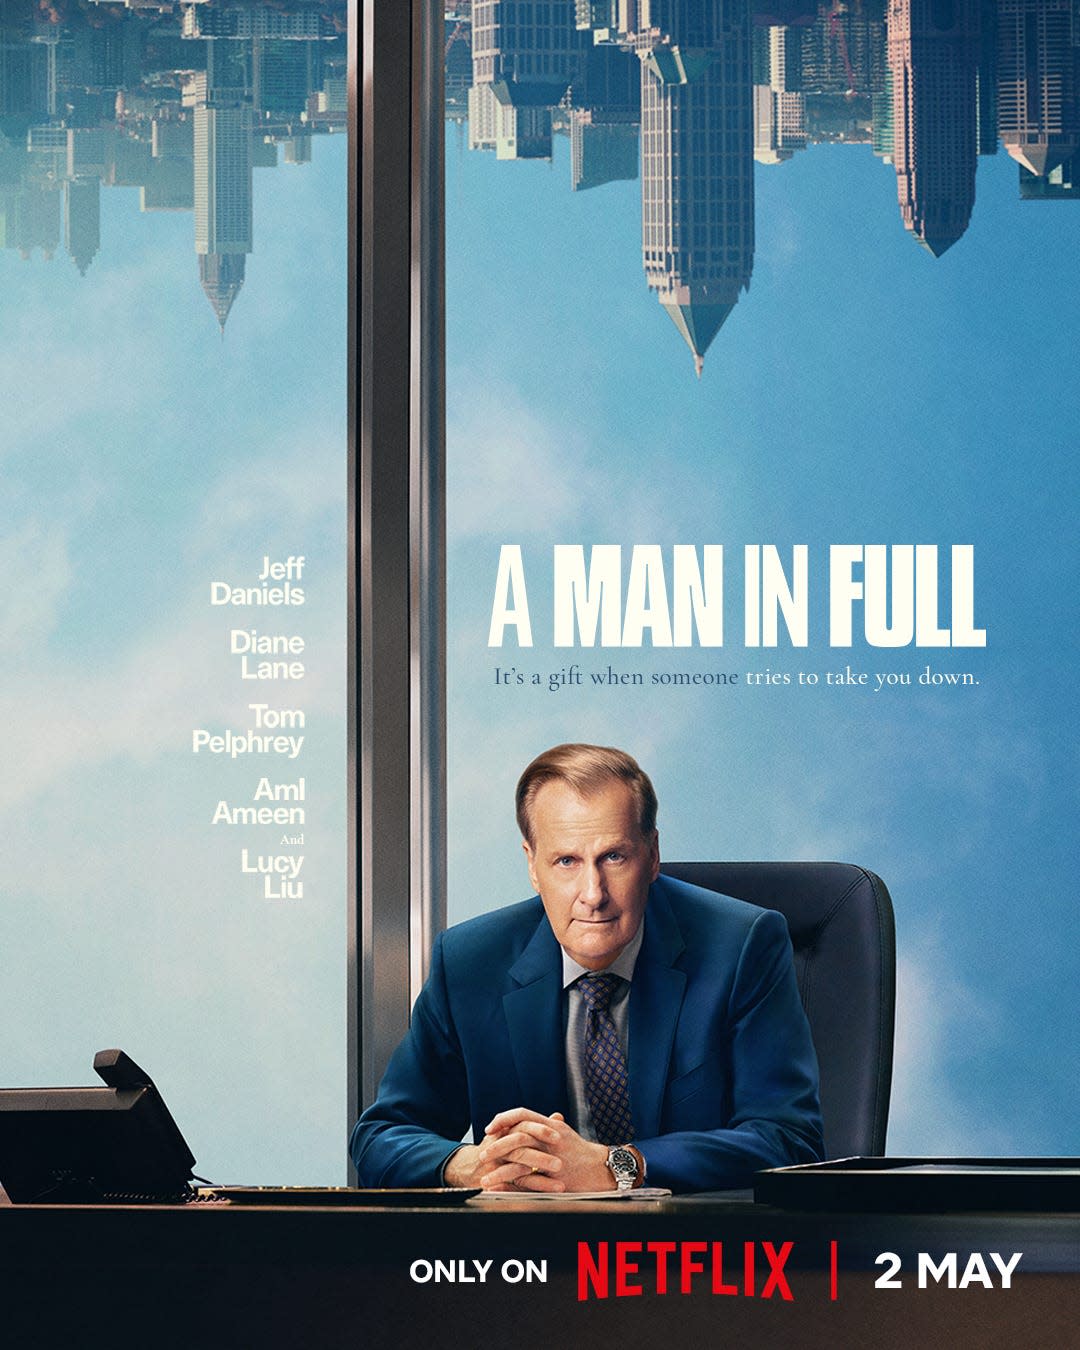 Jeff Daniels in promotional art for Netflix's "A Man in Full."